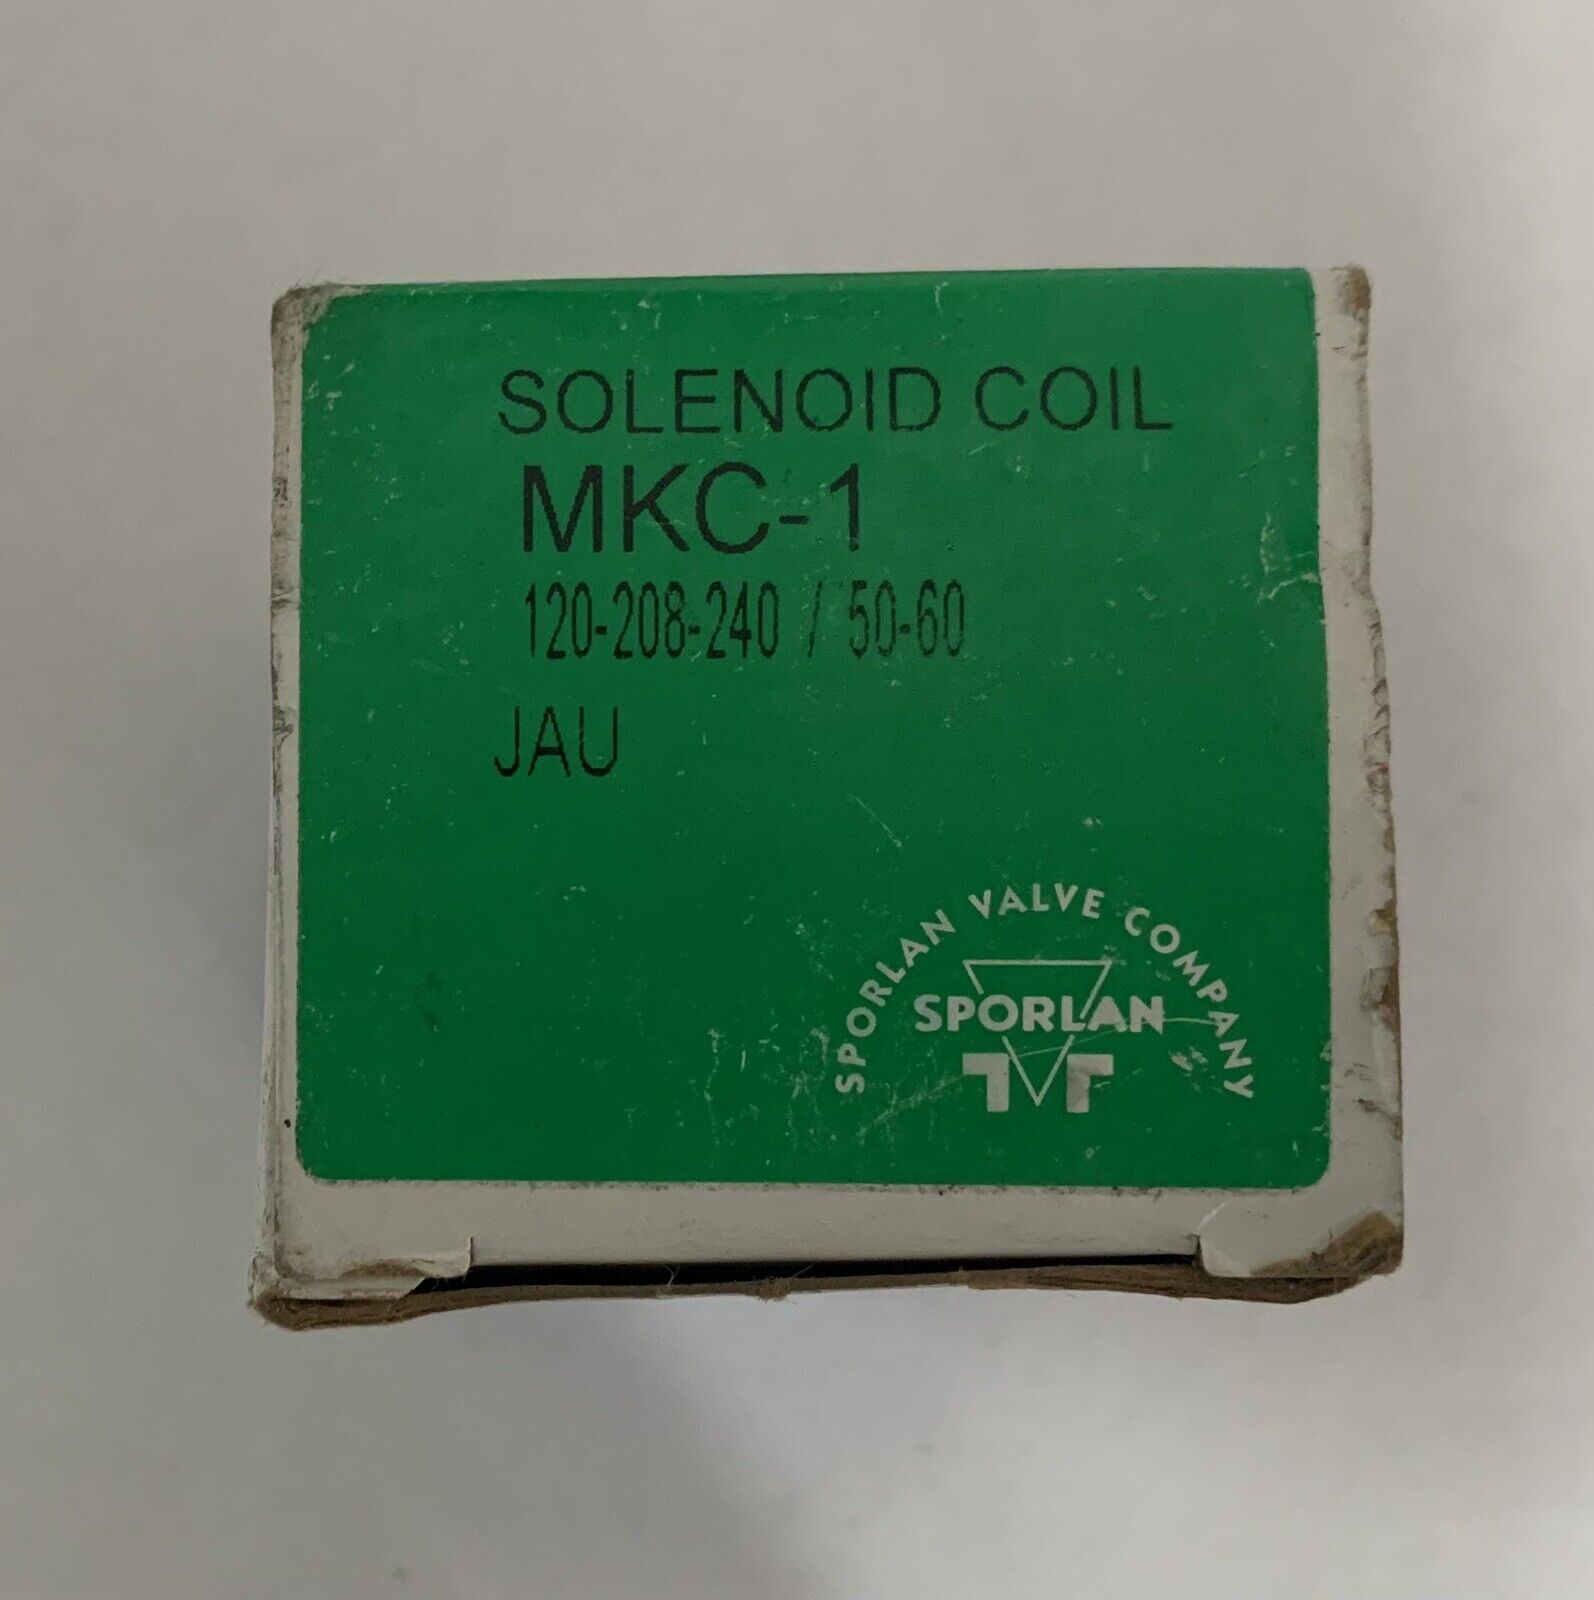 SPORLAN VALVE MKC-1 SOLENOID COIL 310286 120-208-240v